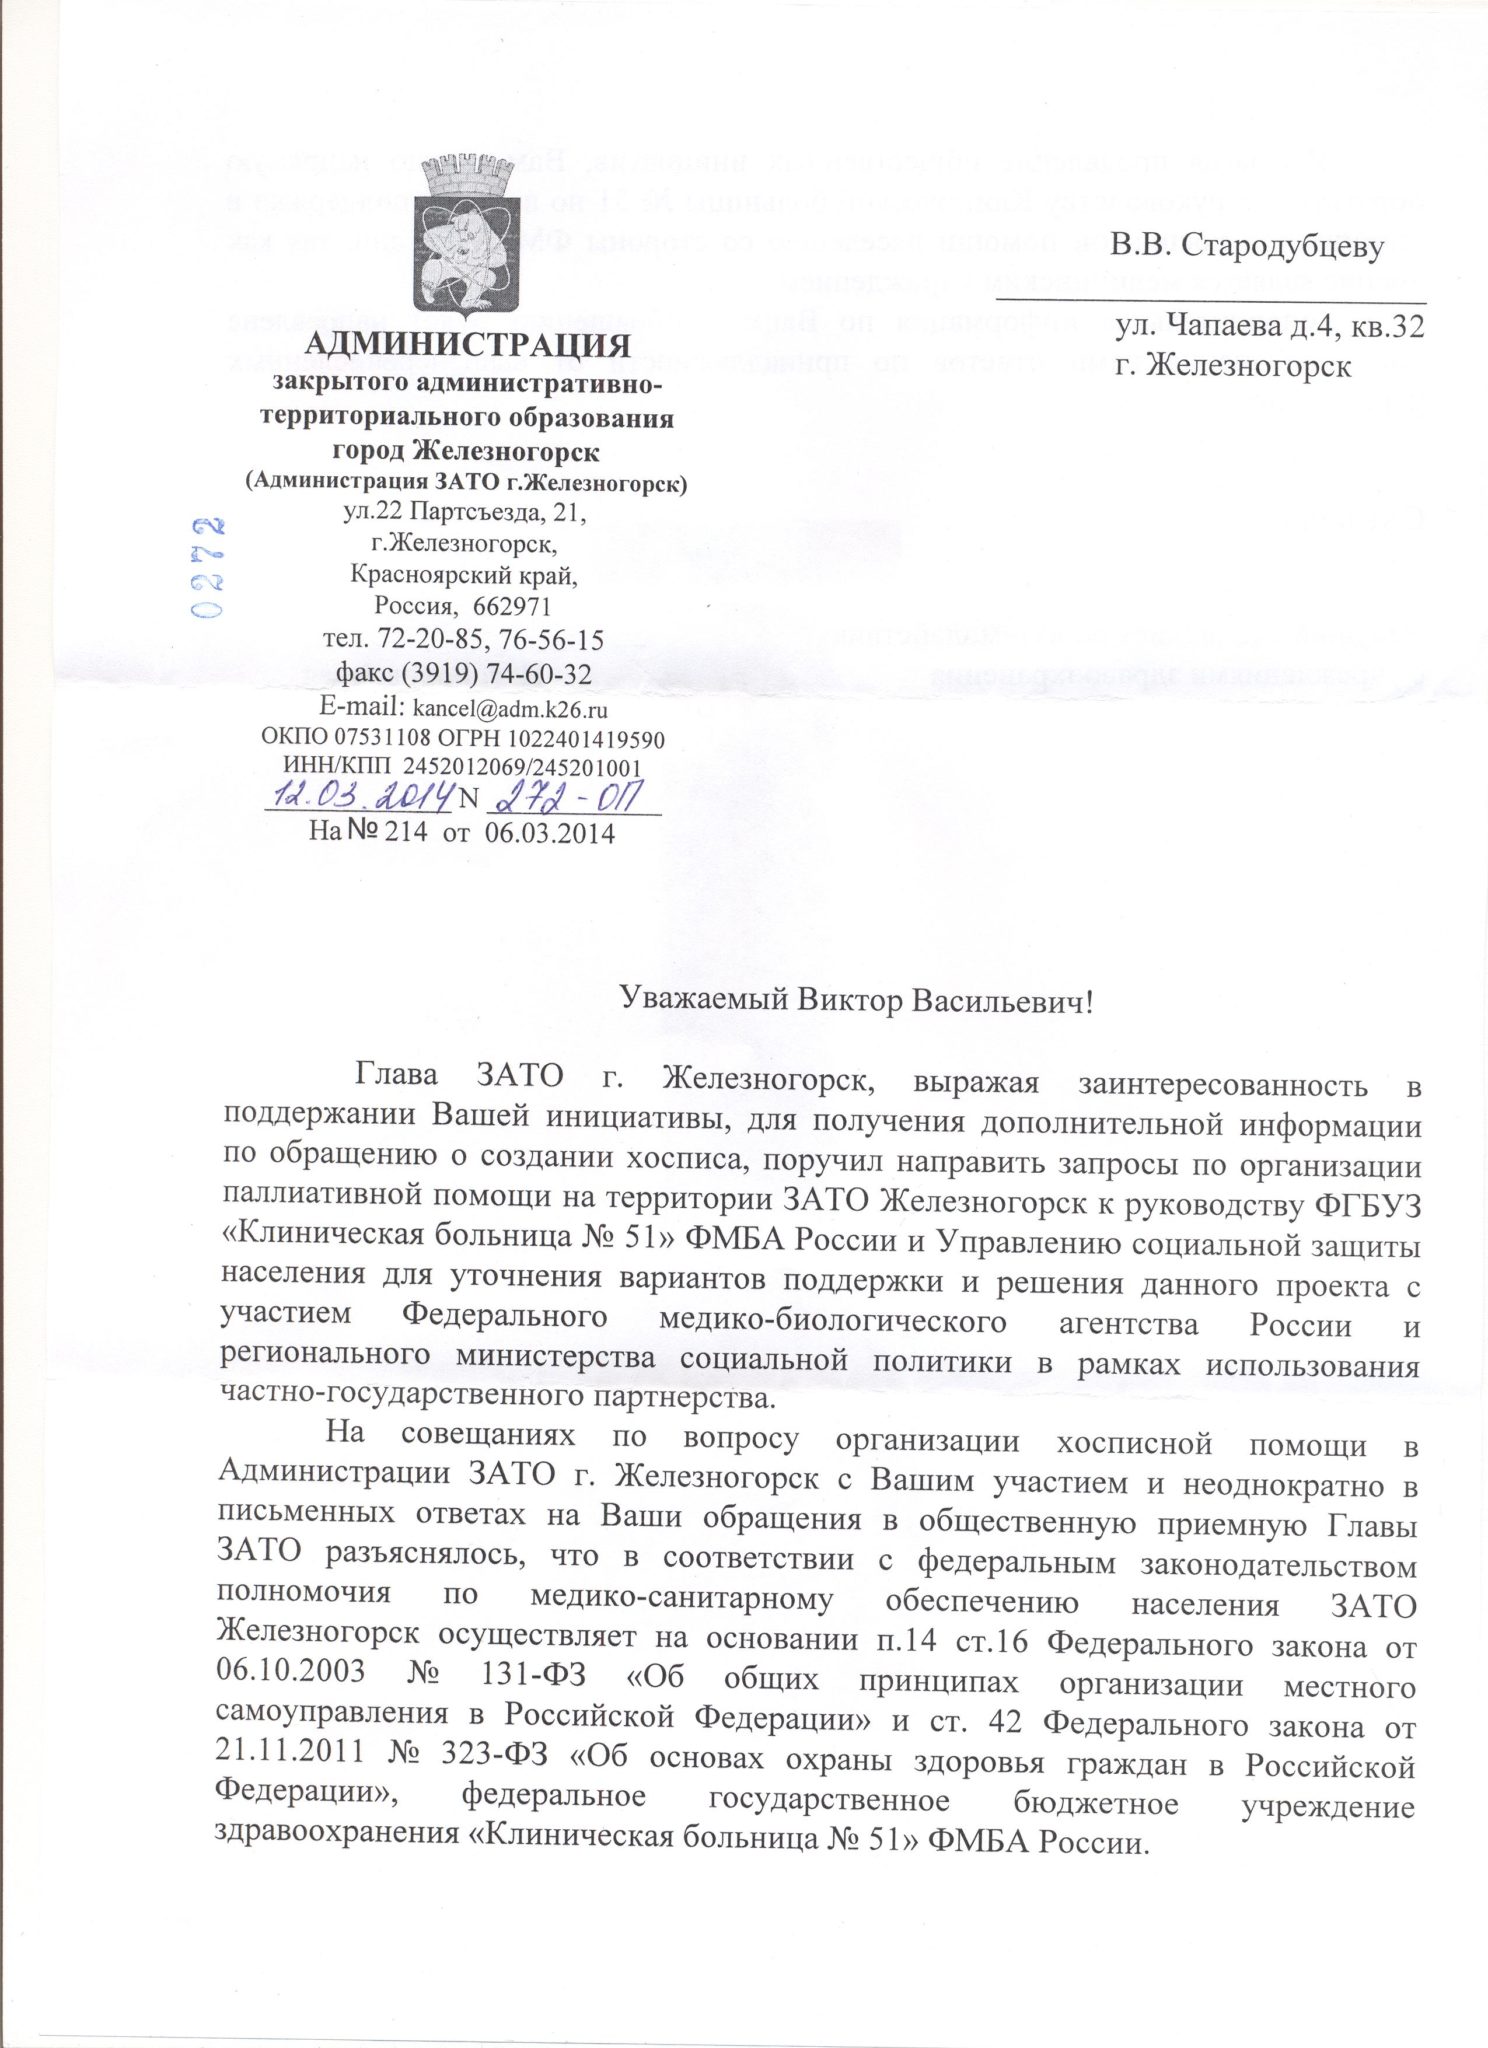 Пришел ответ на обращение в Администрацию ЗАТО г. Железногорск